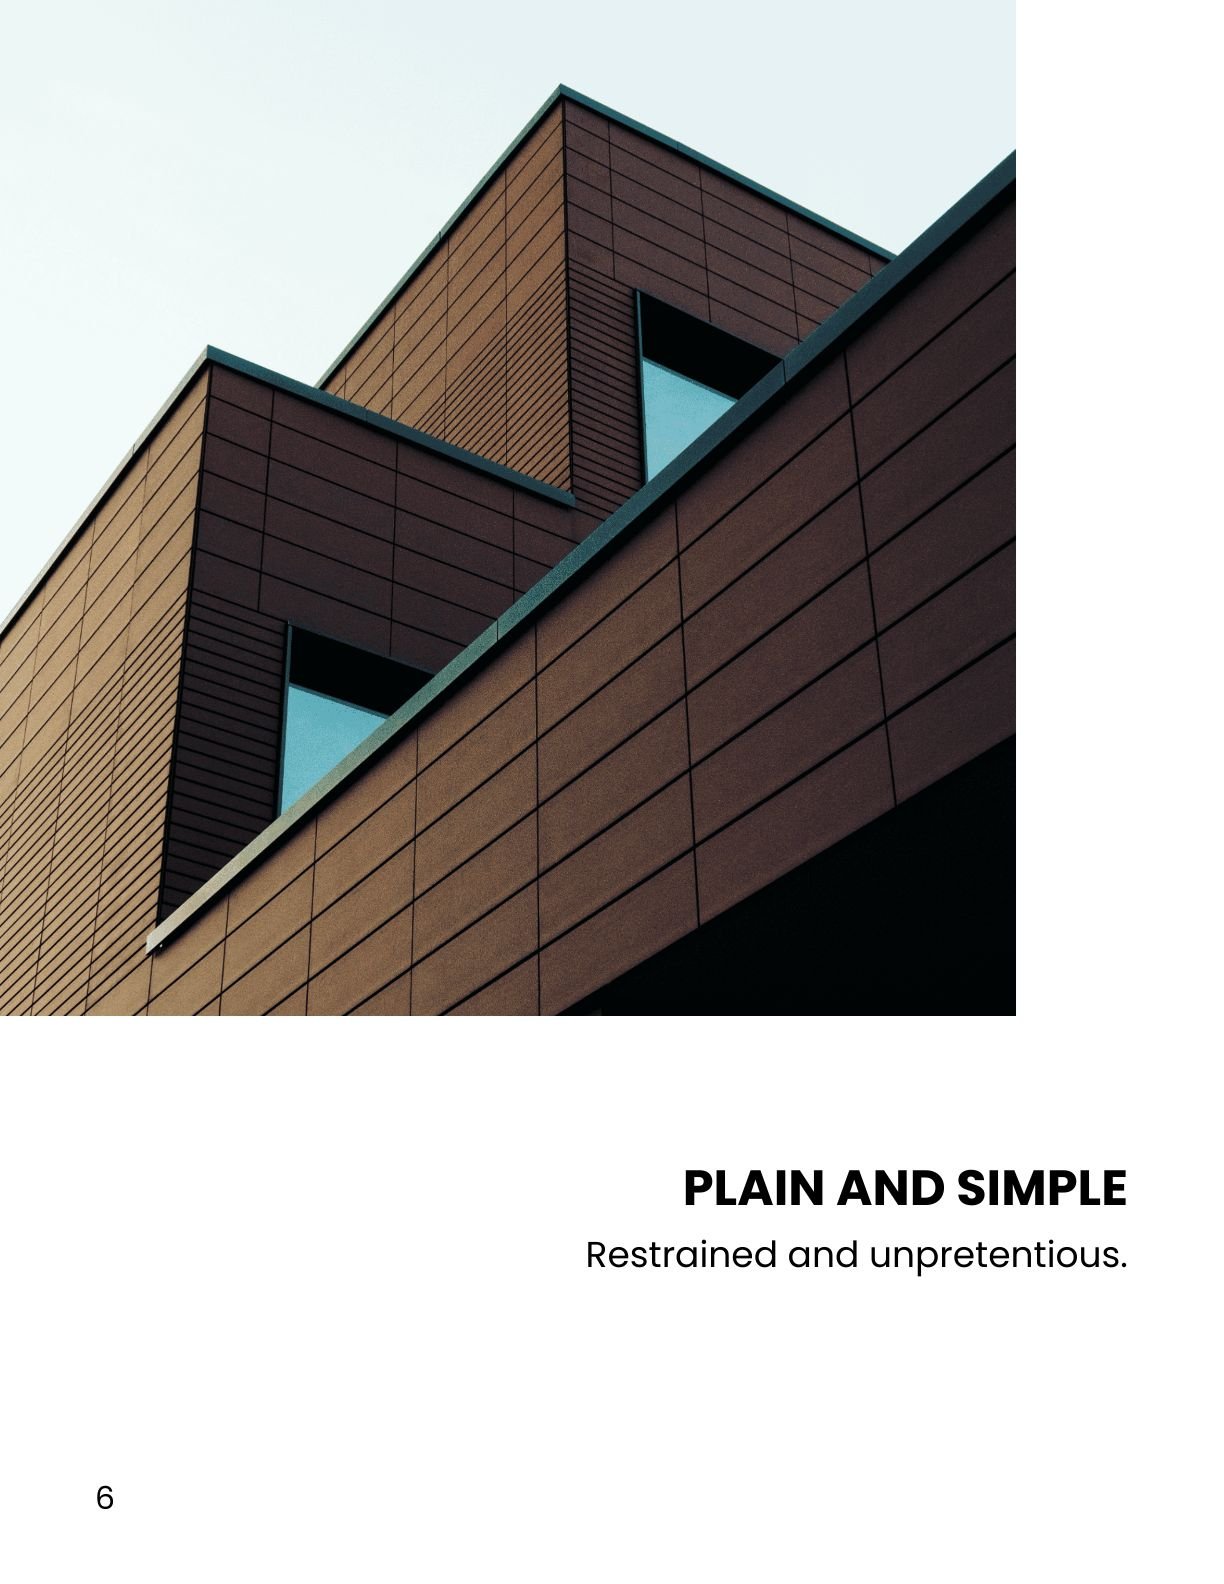 Architecture Photo Book Template